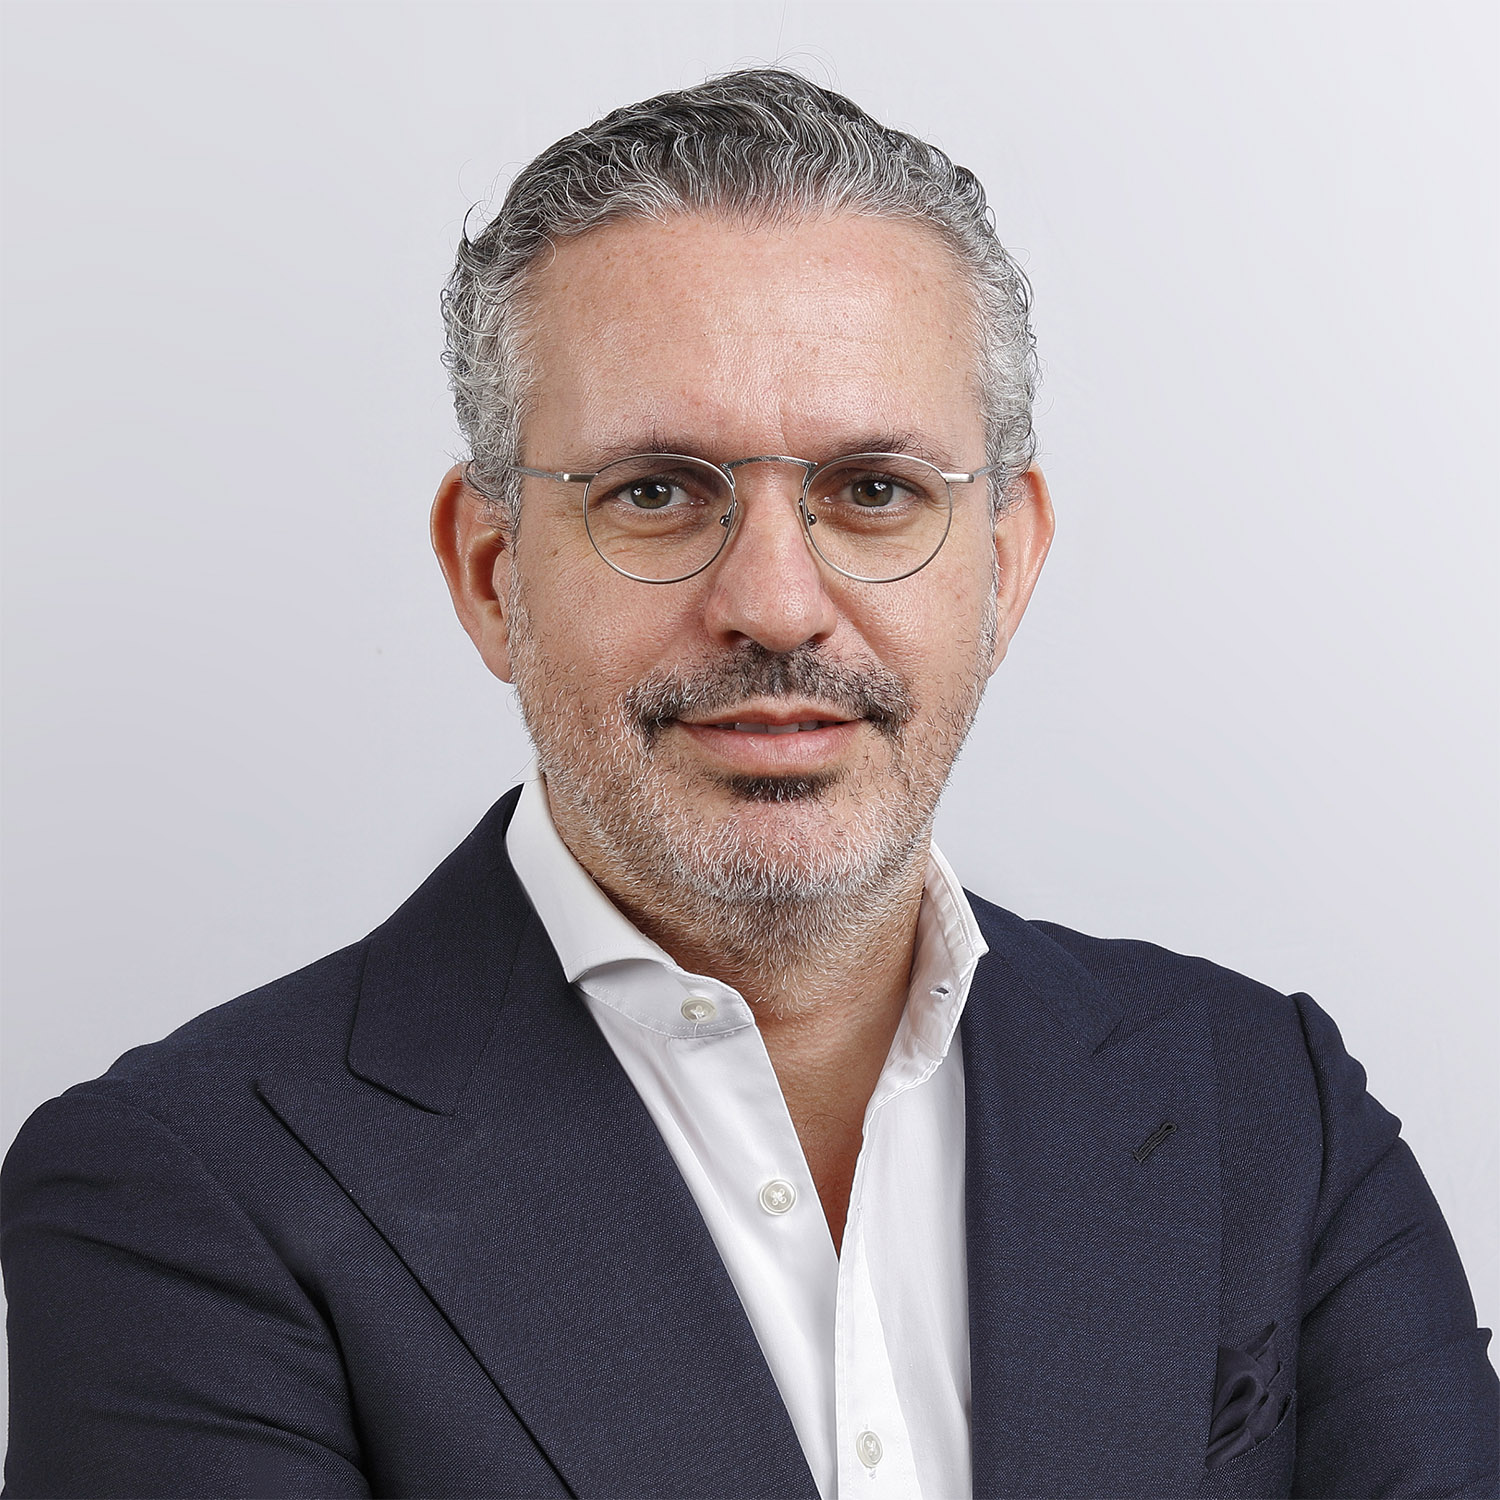 Iván Cristóbal. Co-founder, Executive Chairman, Spain